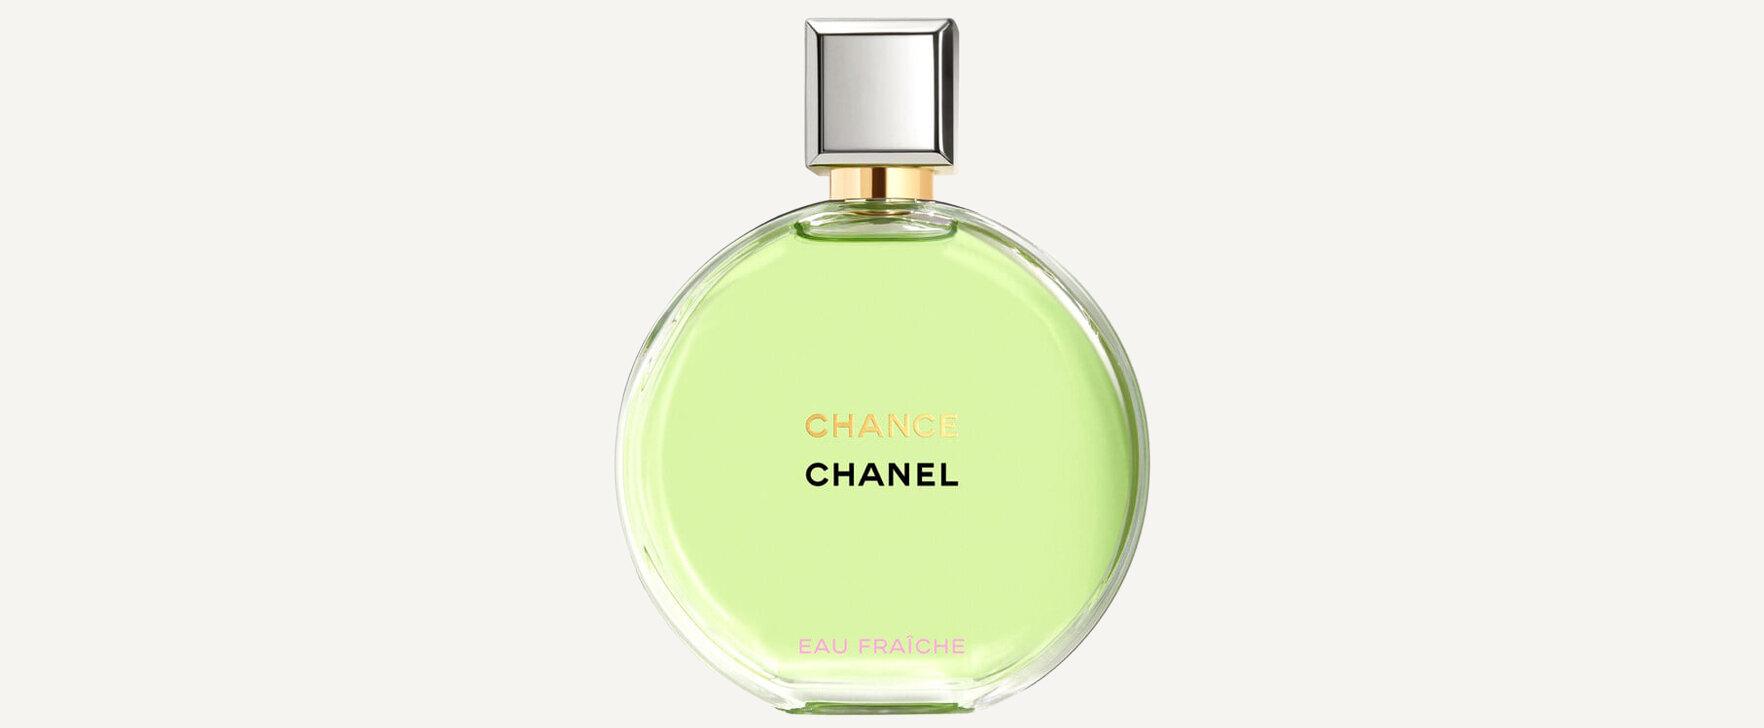 "Chance Eau Fraîche (Eau de Parfum)": Chanel's Popular Women's Fragrance "Chance Eau Fraîche" in a New Intensity